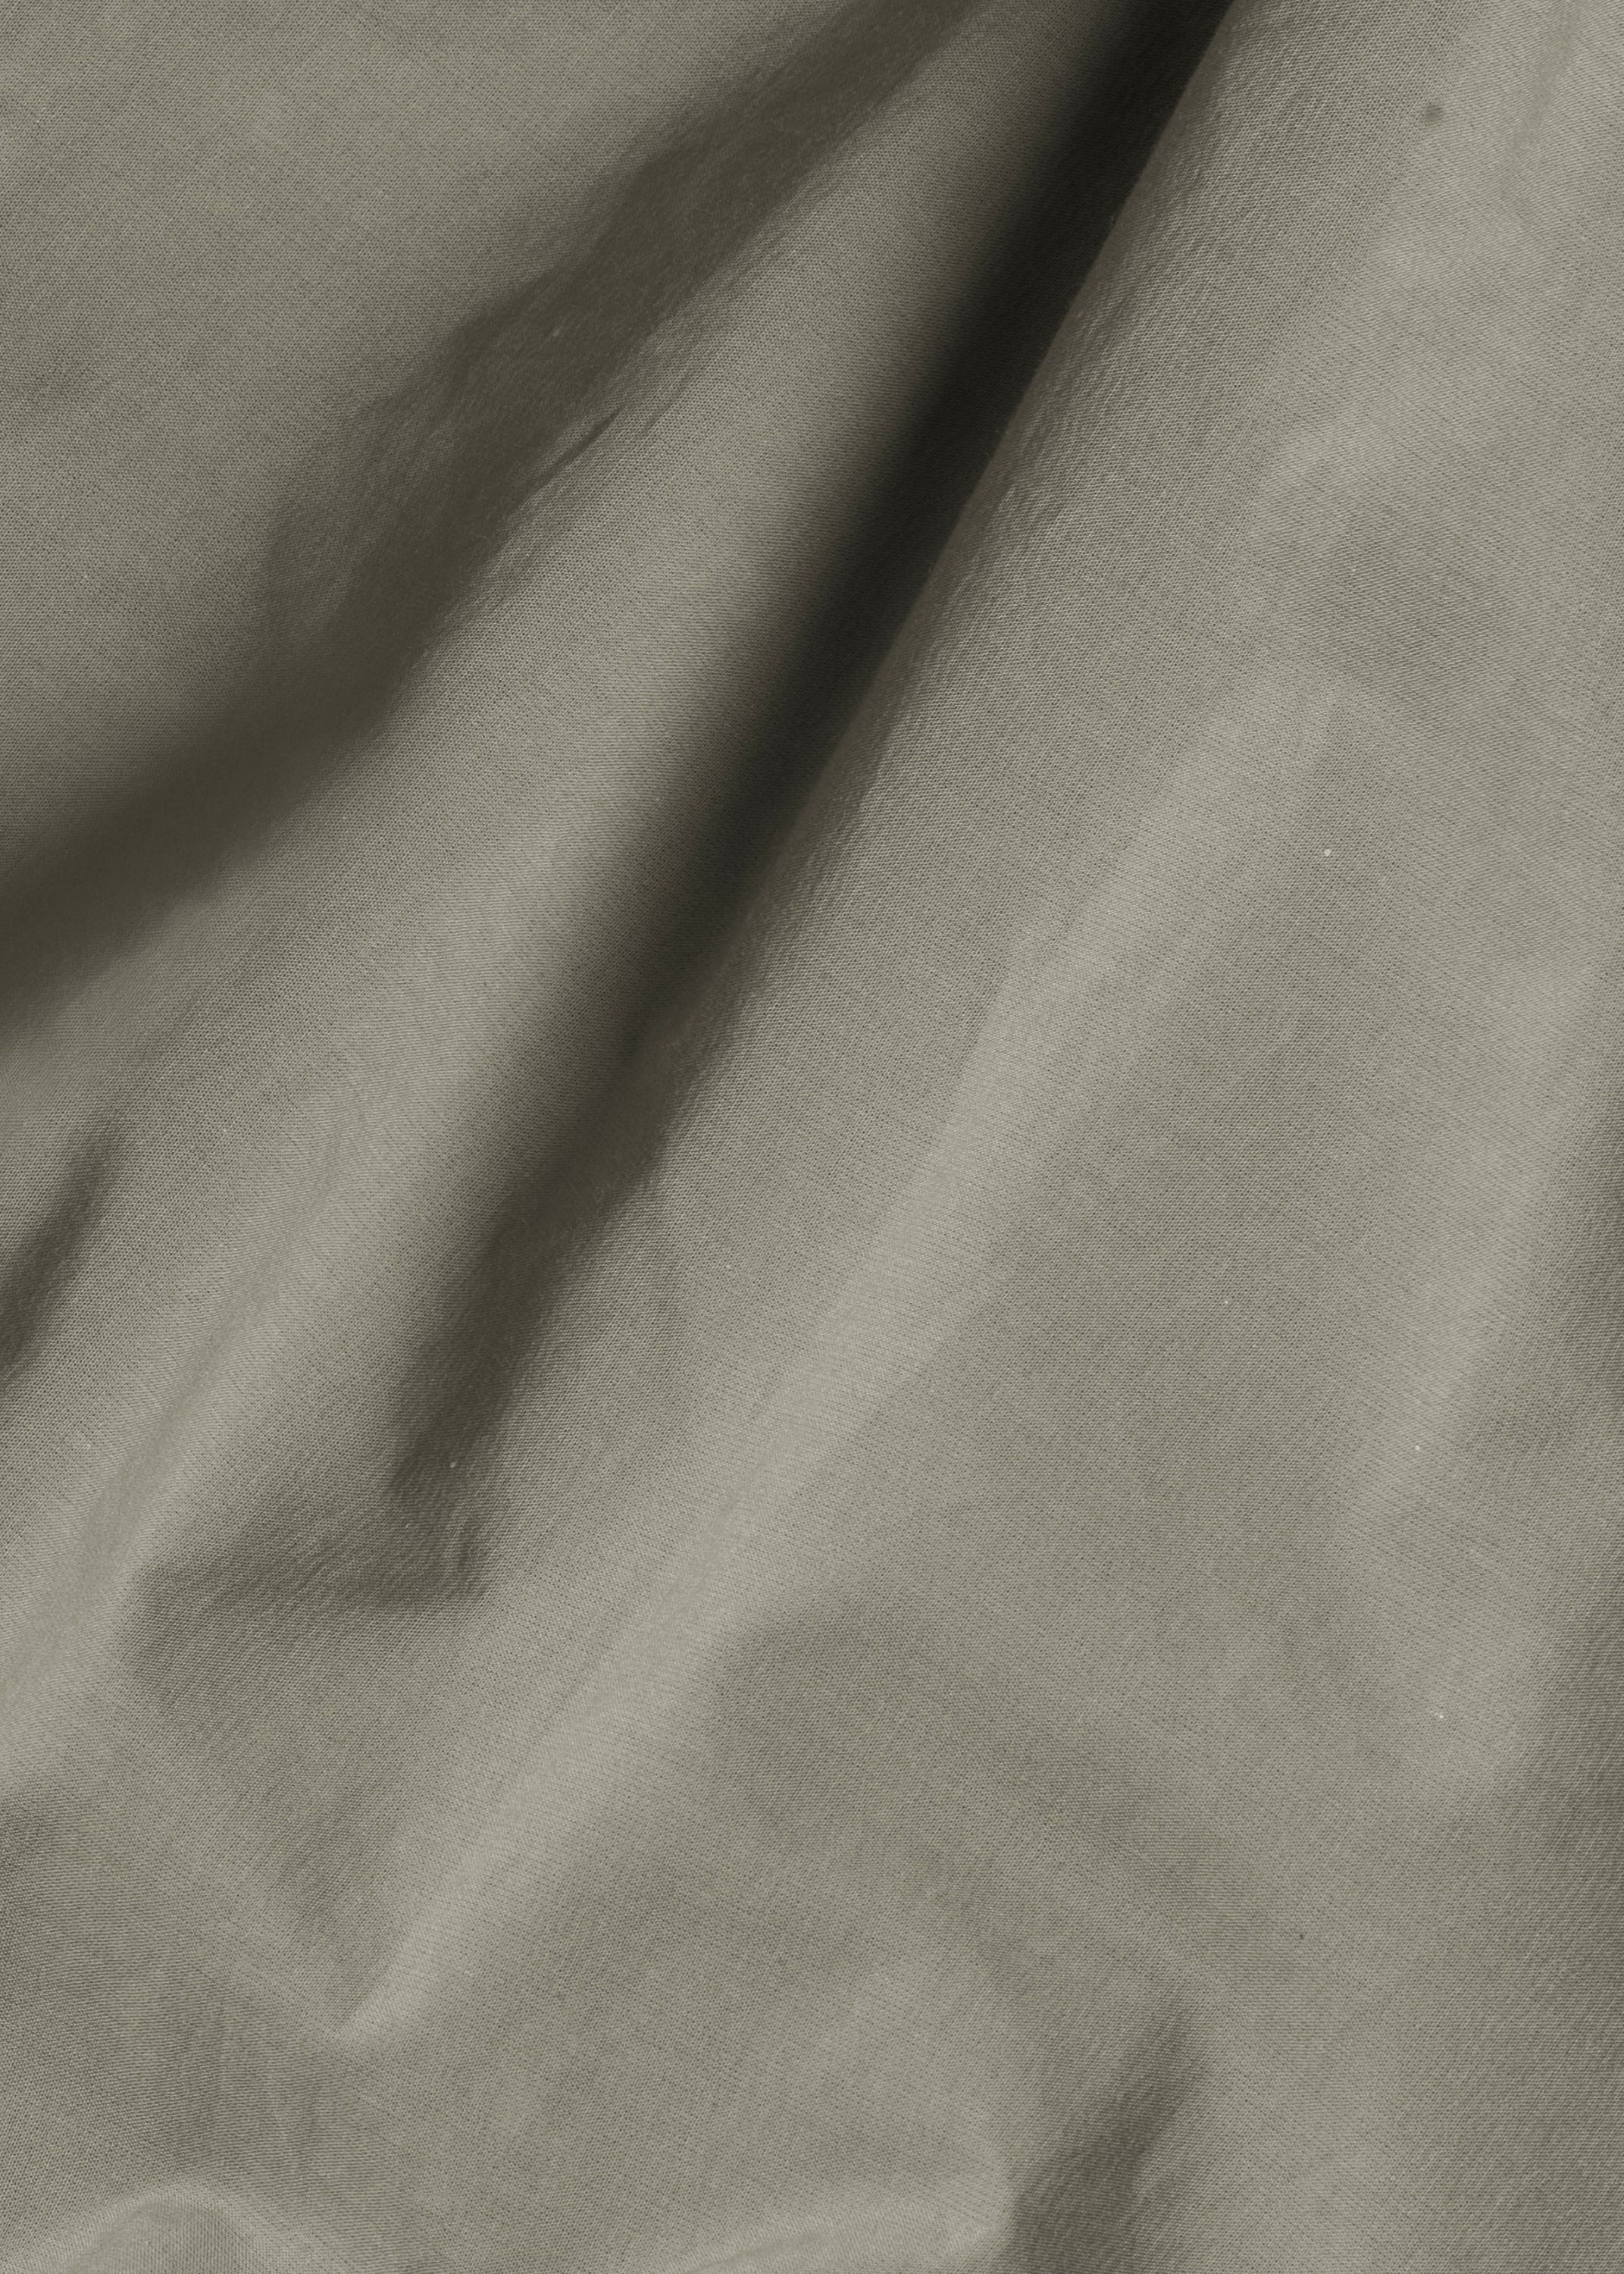 Bedlinen - Flat Sheet (260x260)